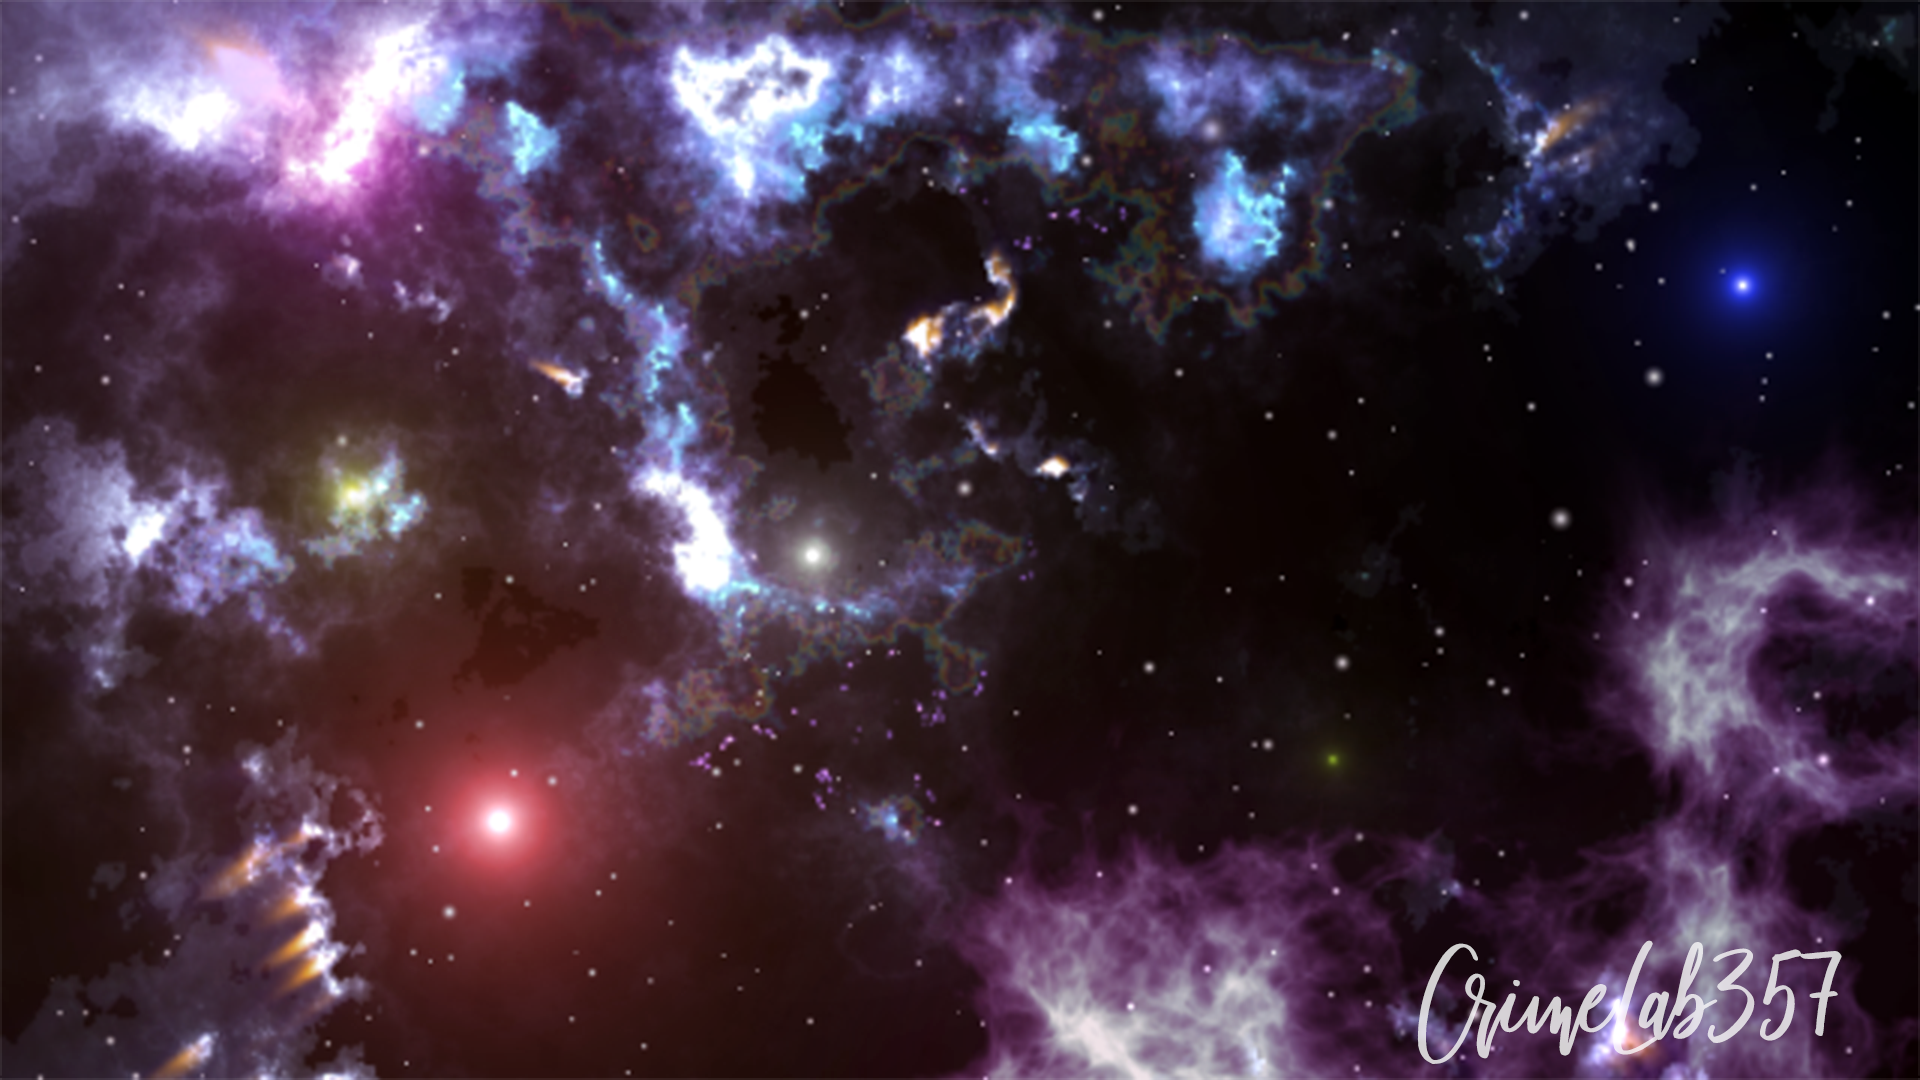 Crimelab357 Liam Ragnathsingh Deep Space Nebula Galaxy Stars 1920x1080